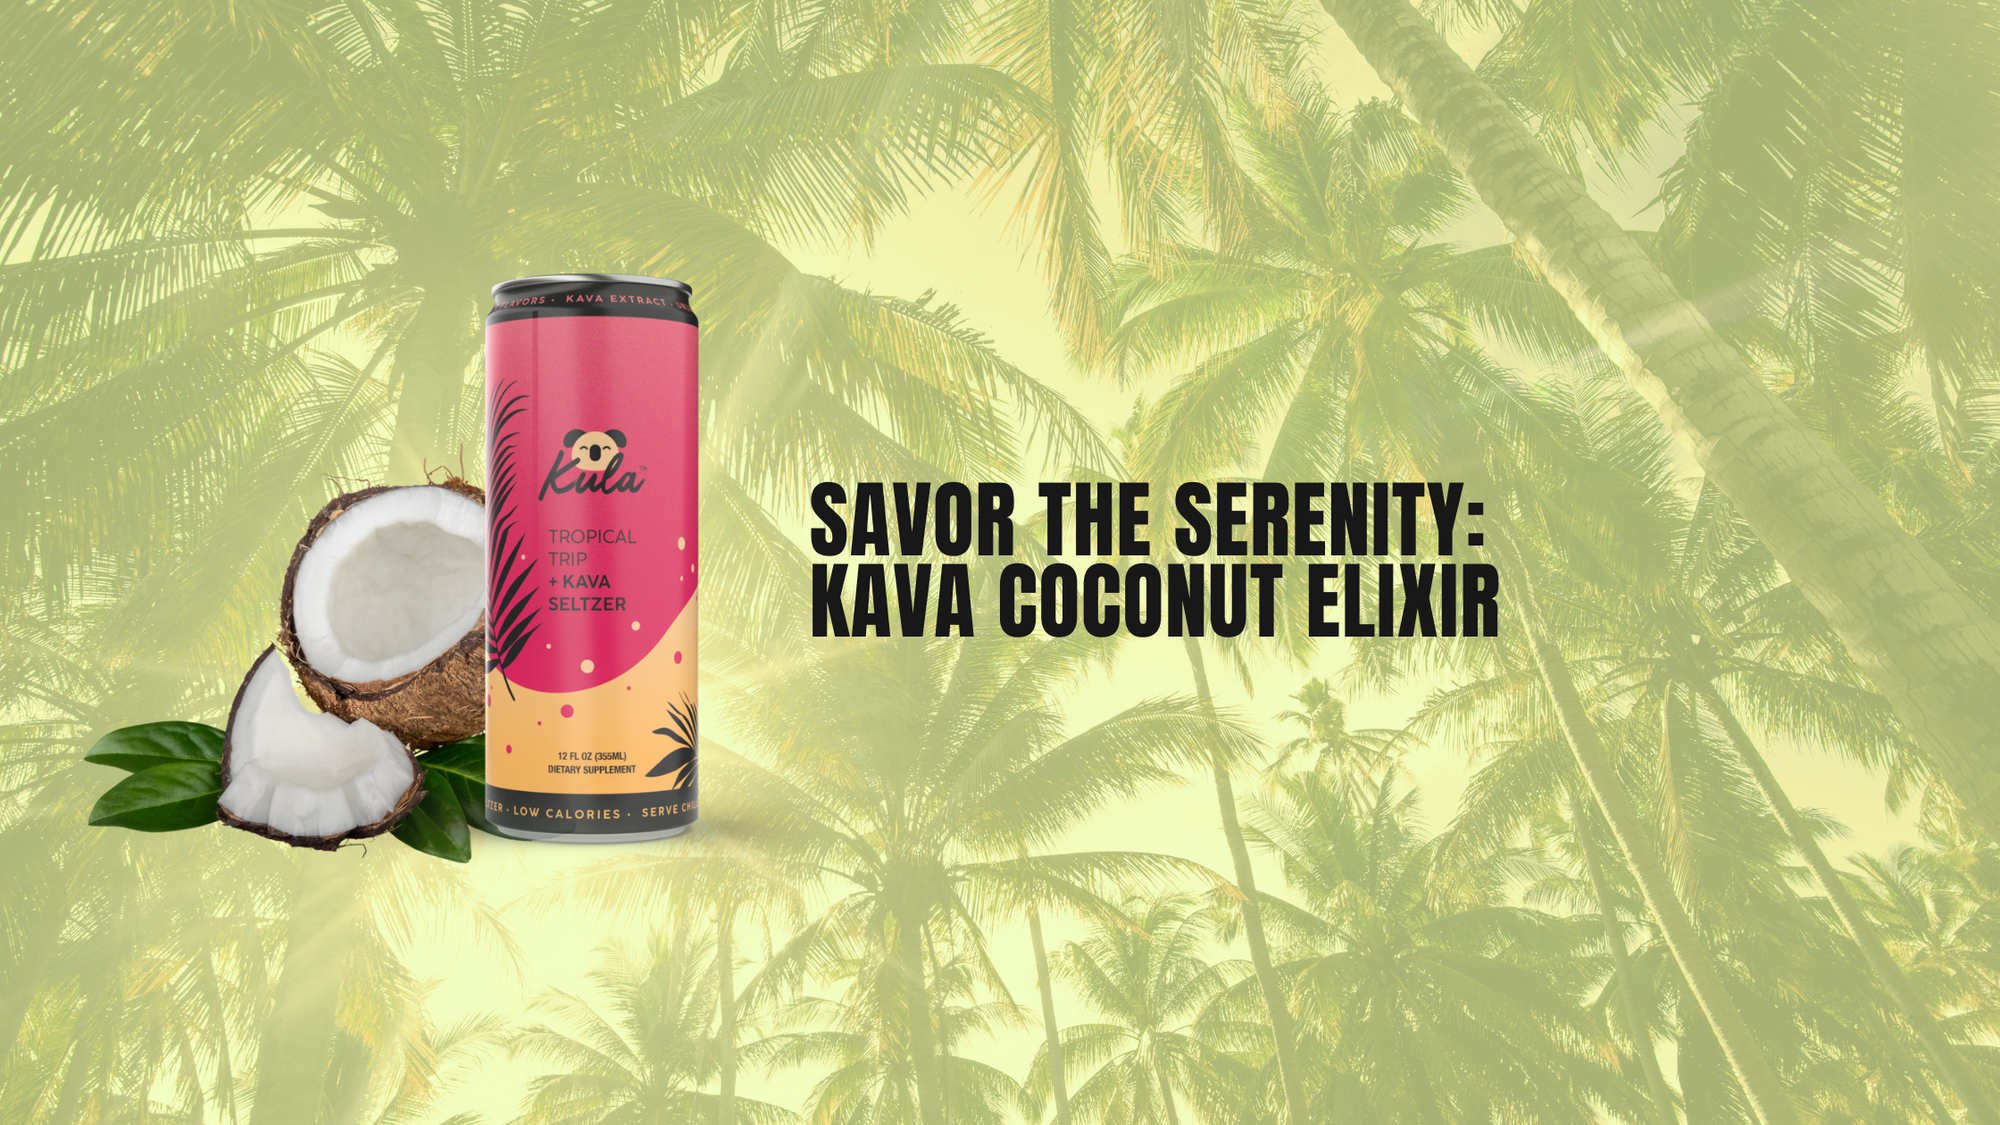 Savor the Serenity: Kava Coconut Elixir